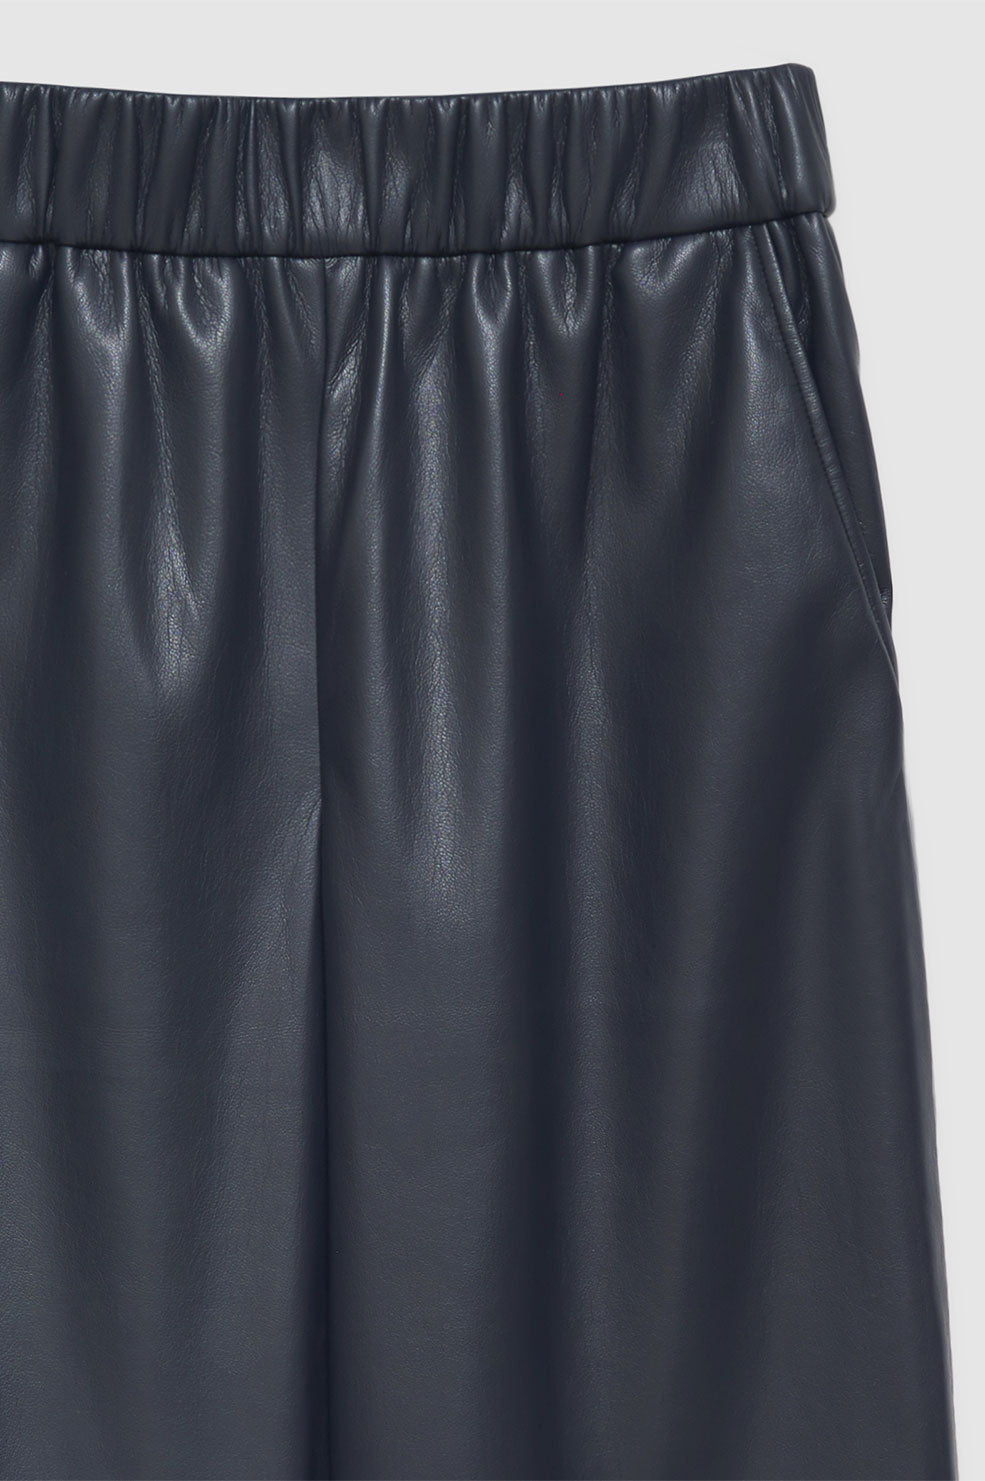 ANINE BING Koa Pant - Navy Vegan Leather - Detail View